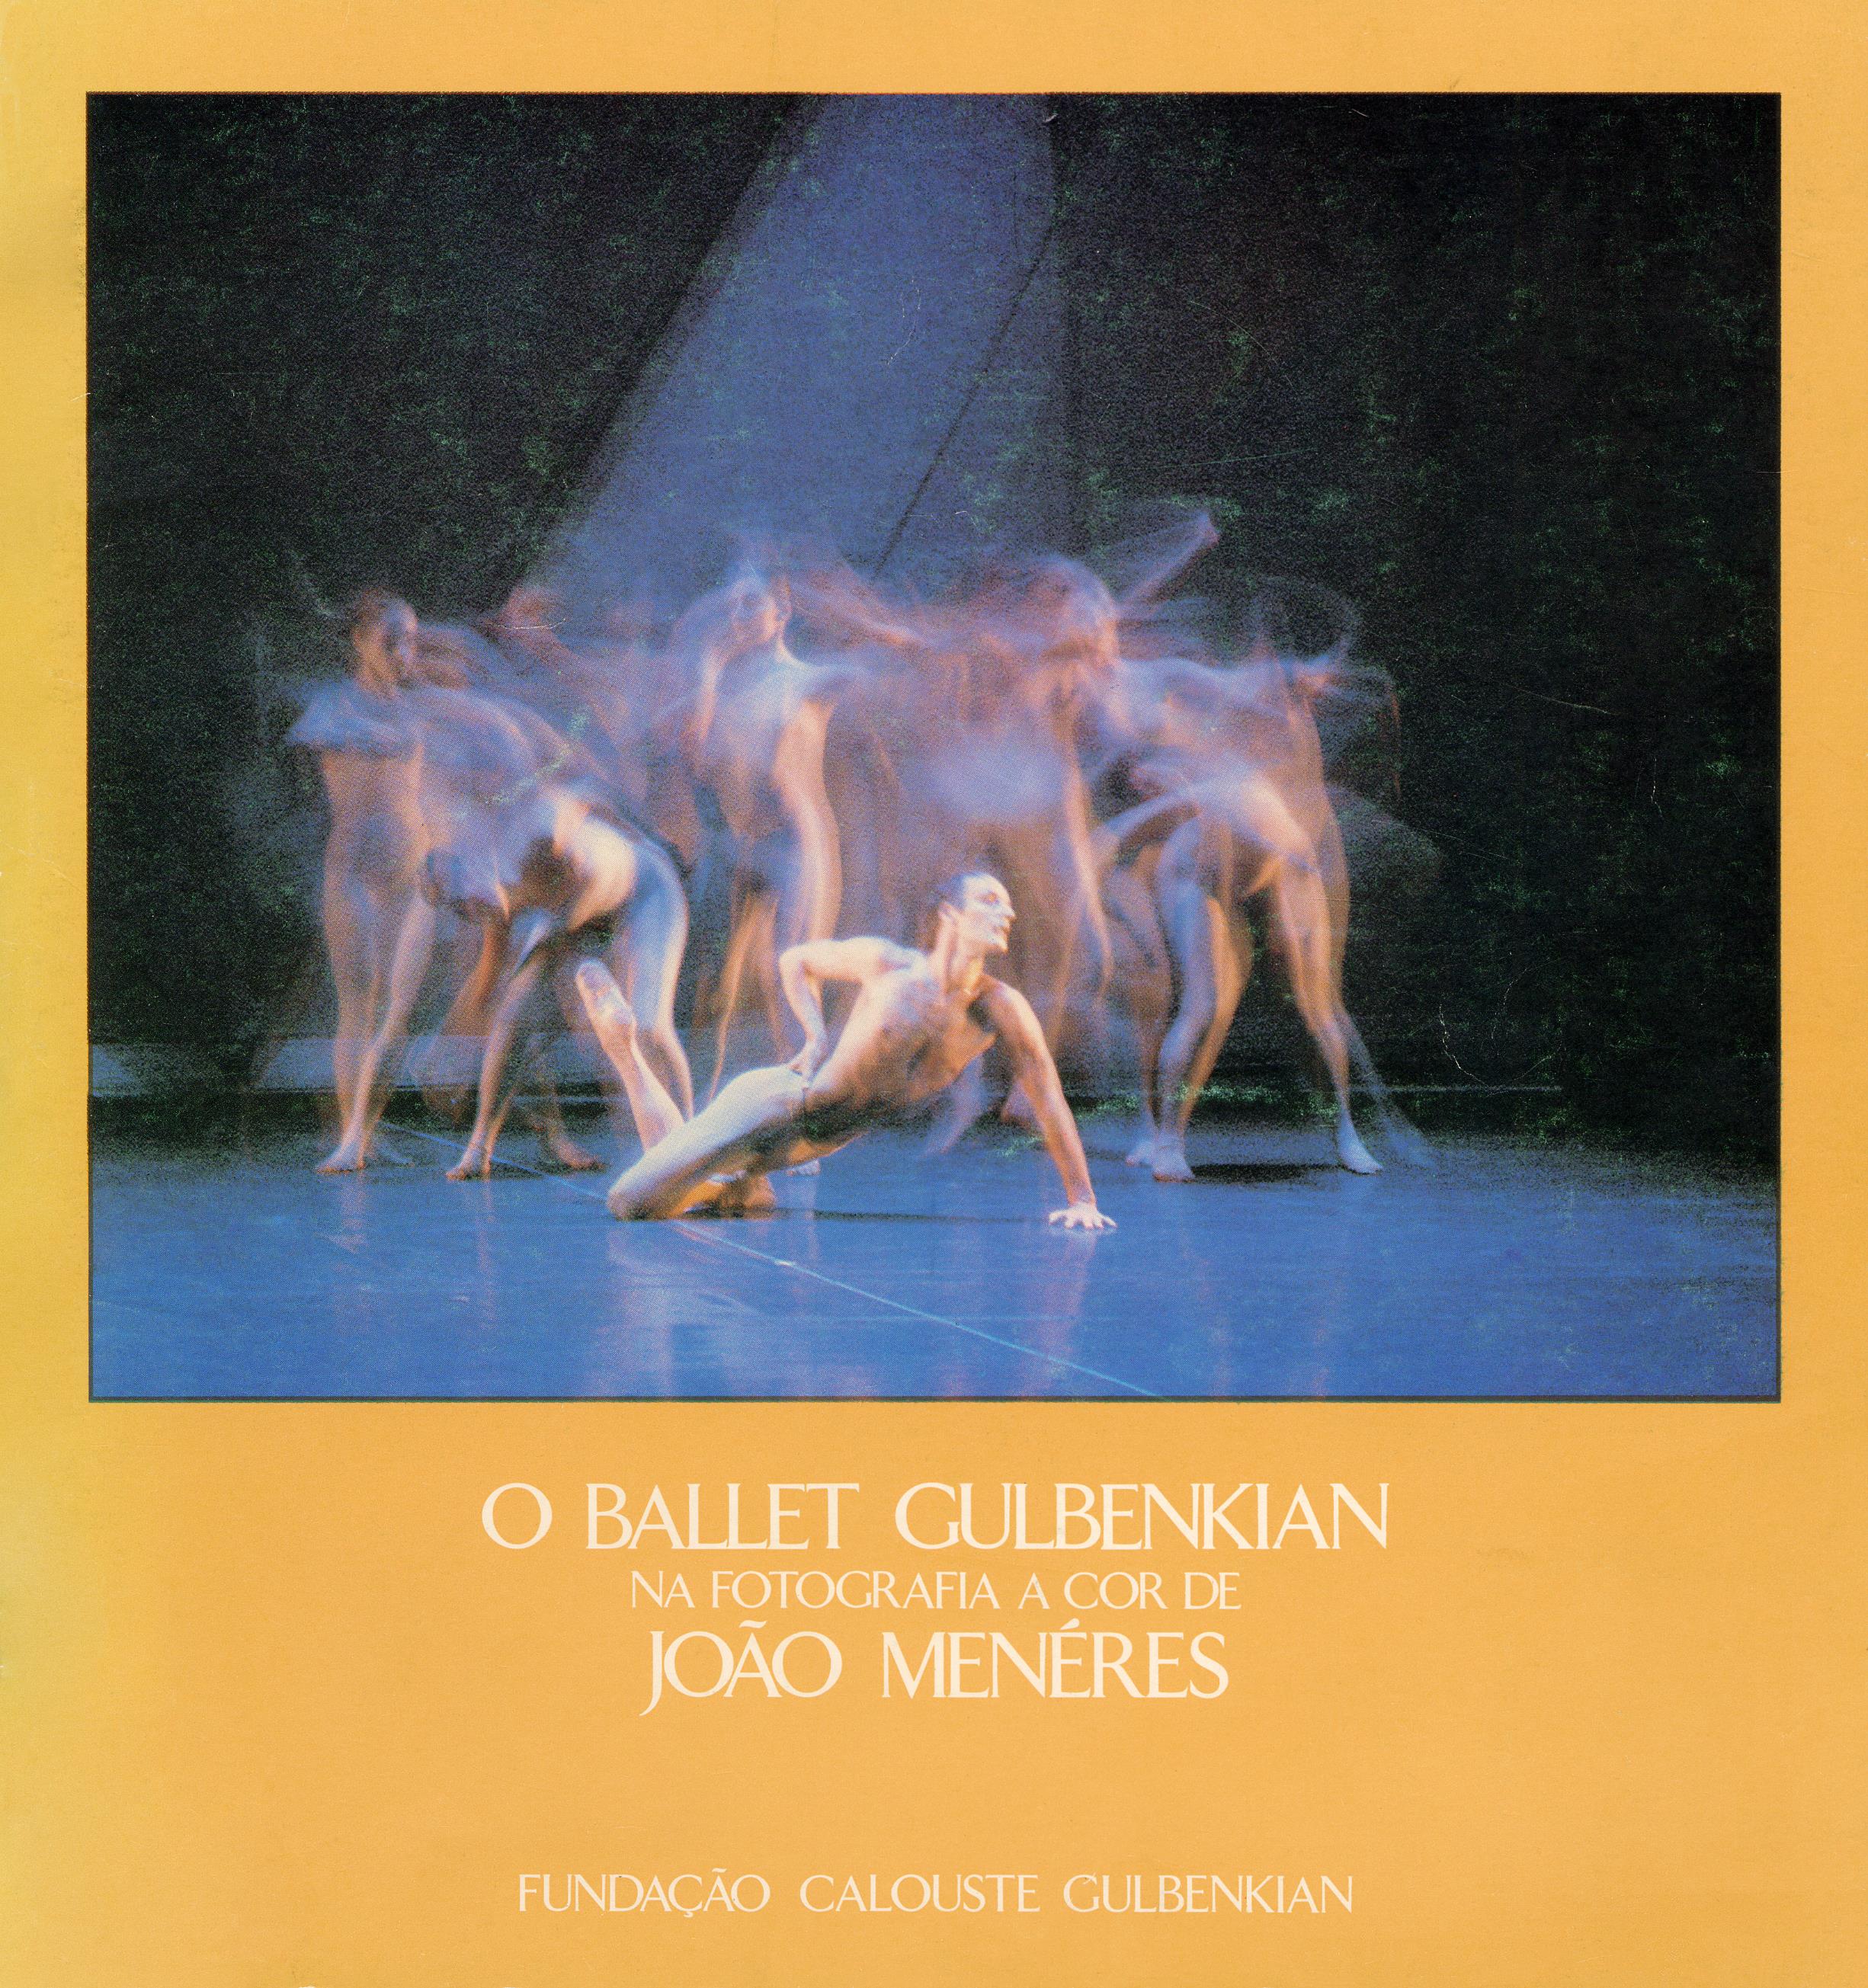 O Ballet Gulbenkian na Fotografia a Cor de João Menéres